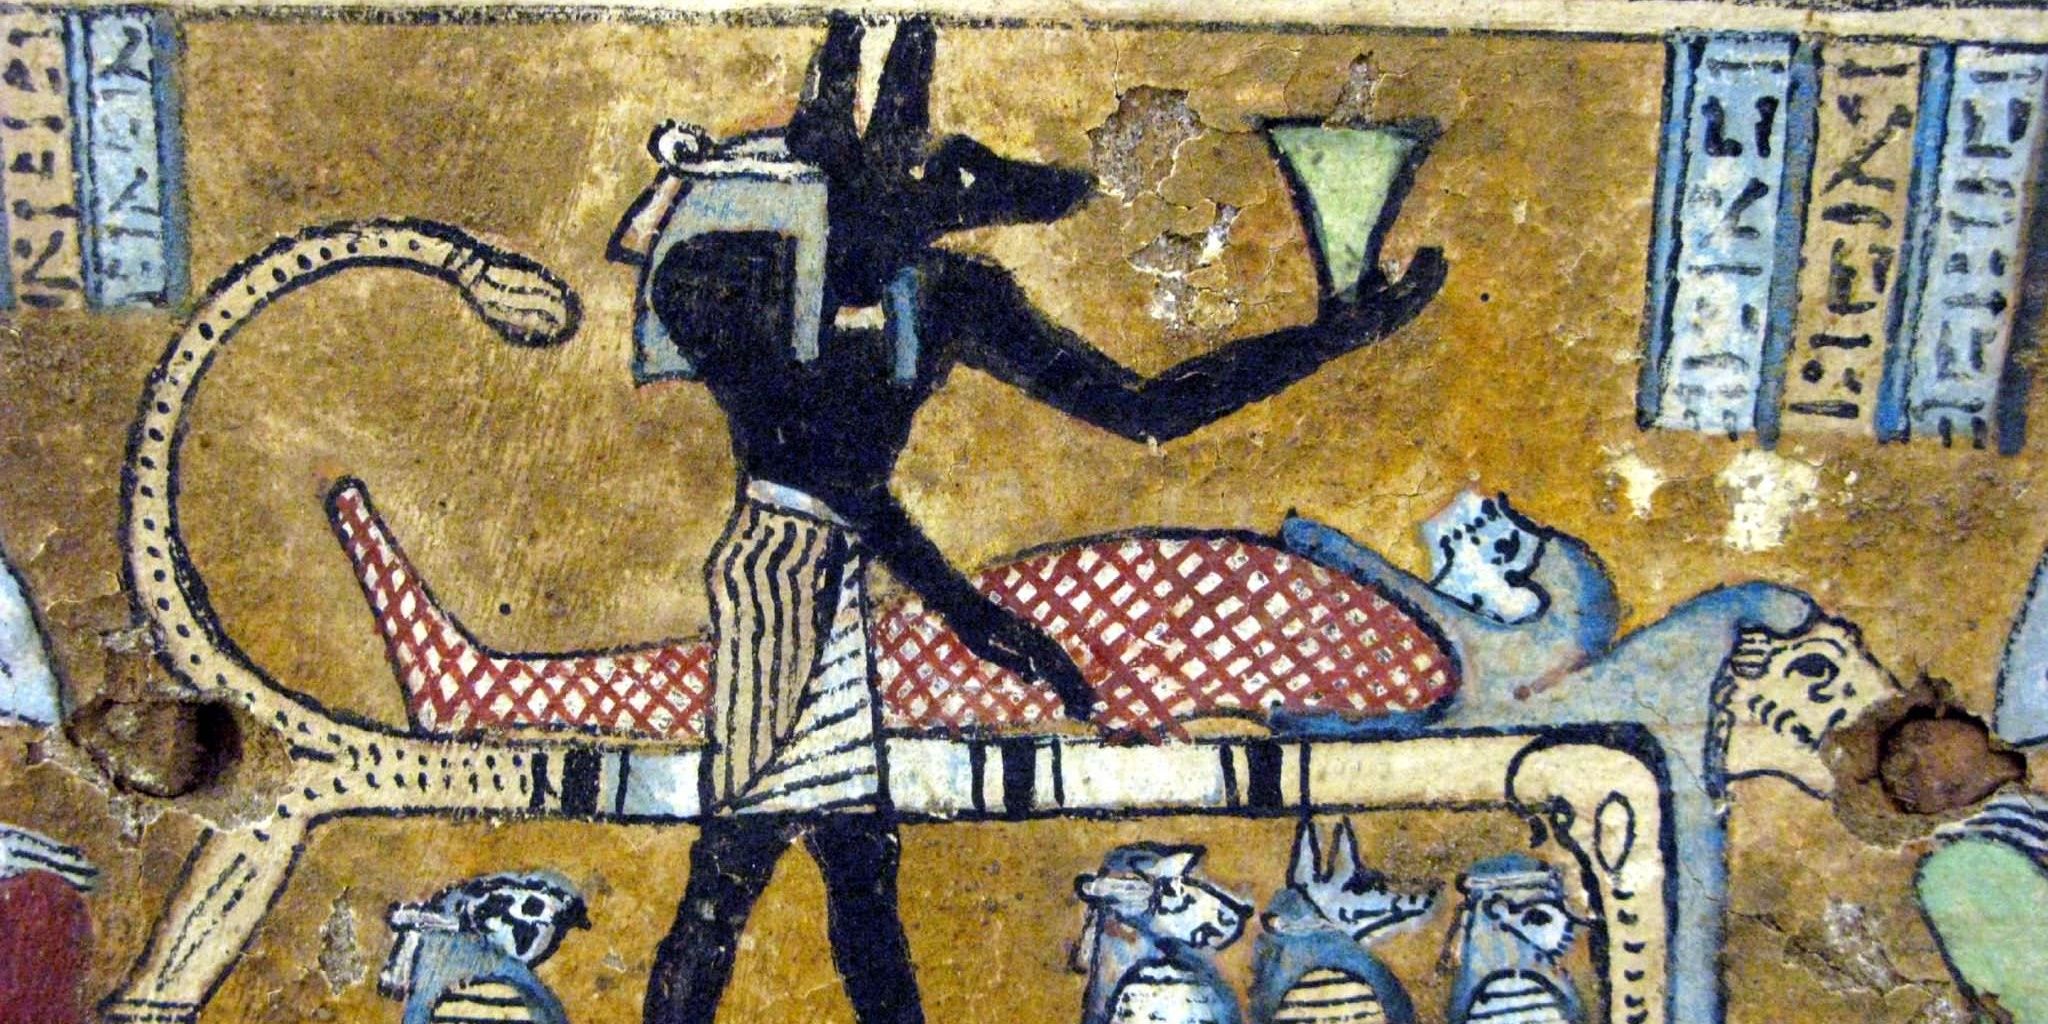 Egyptian mythology